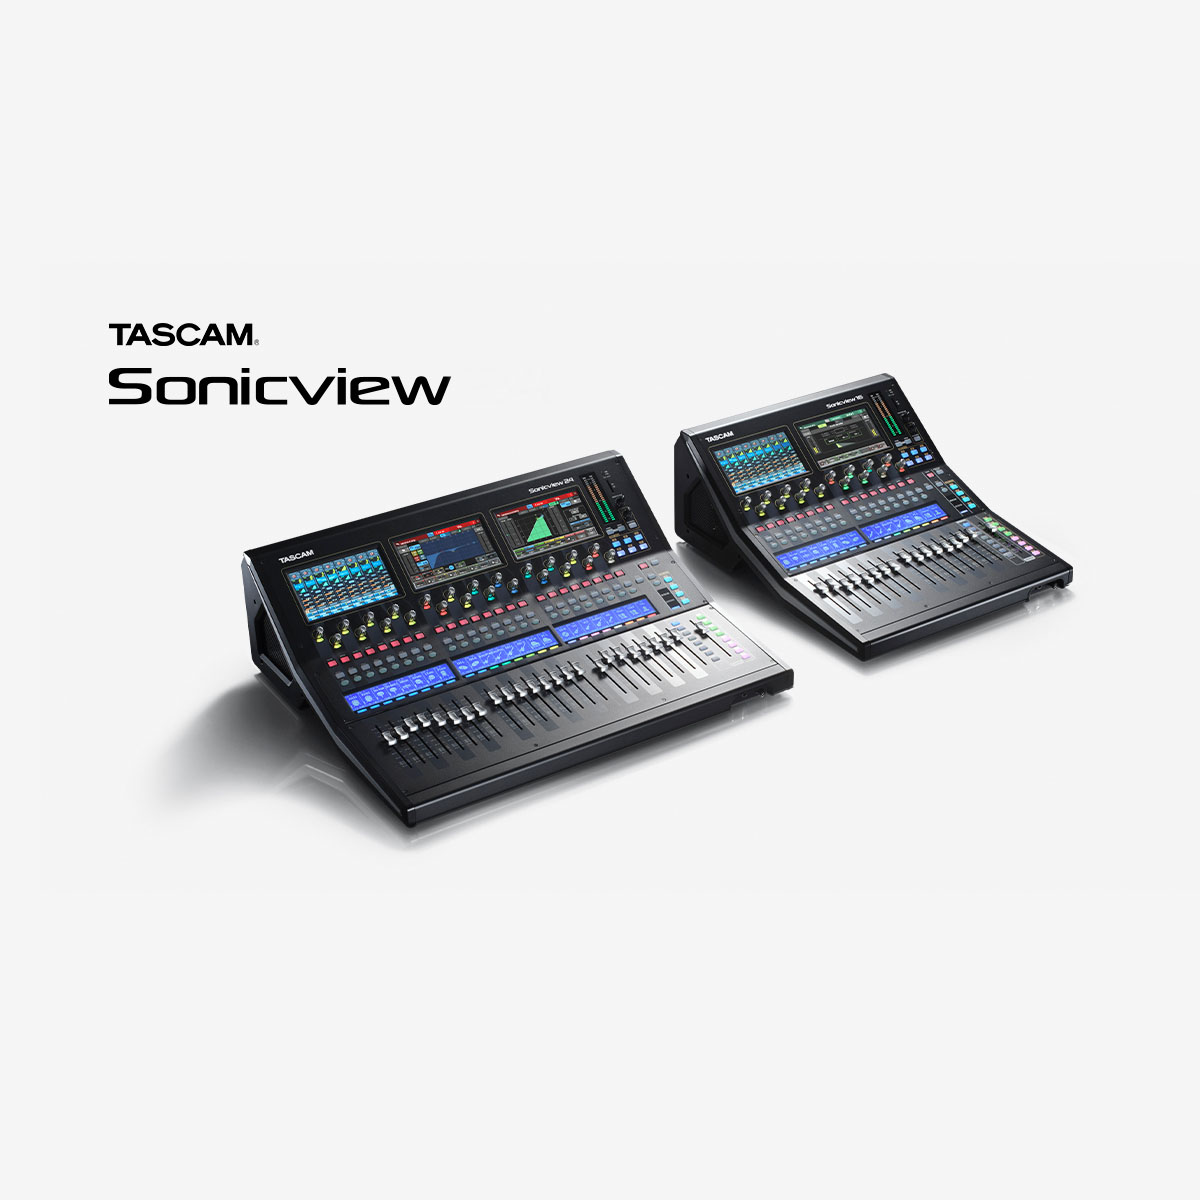 TASCAM Sonicviewシリーズのファームウェア V1.5.0の不具合について